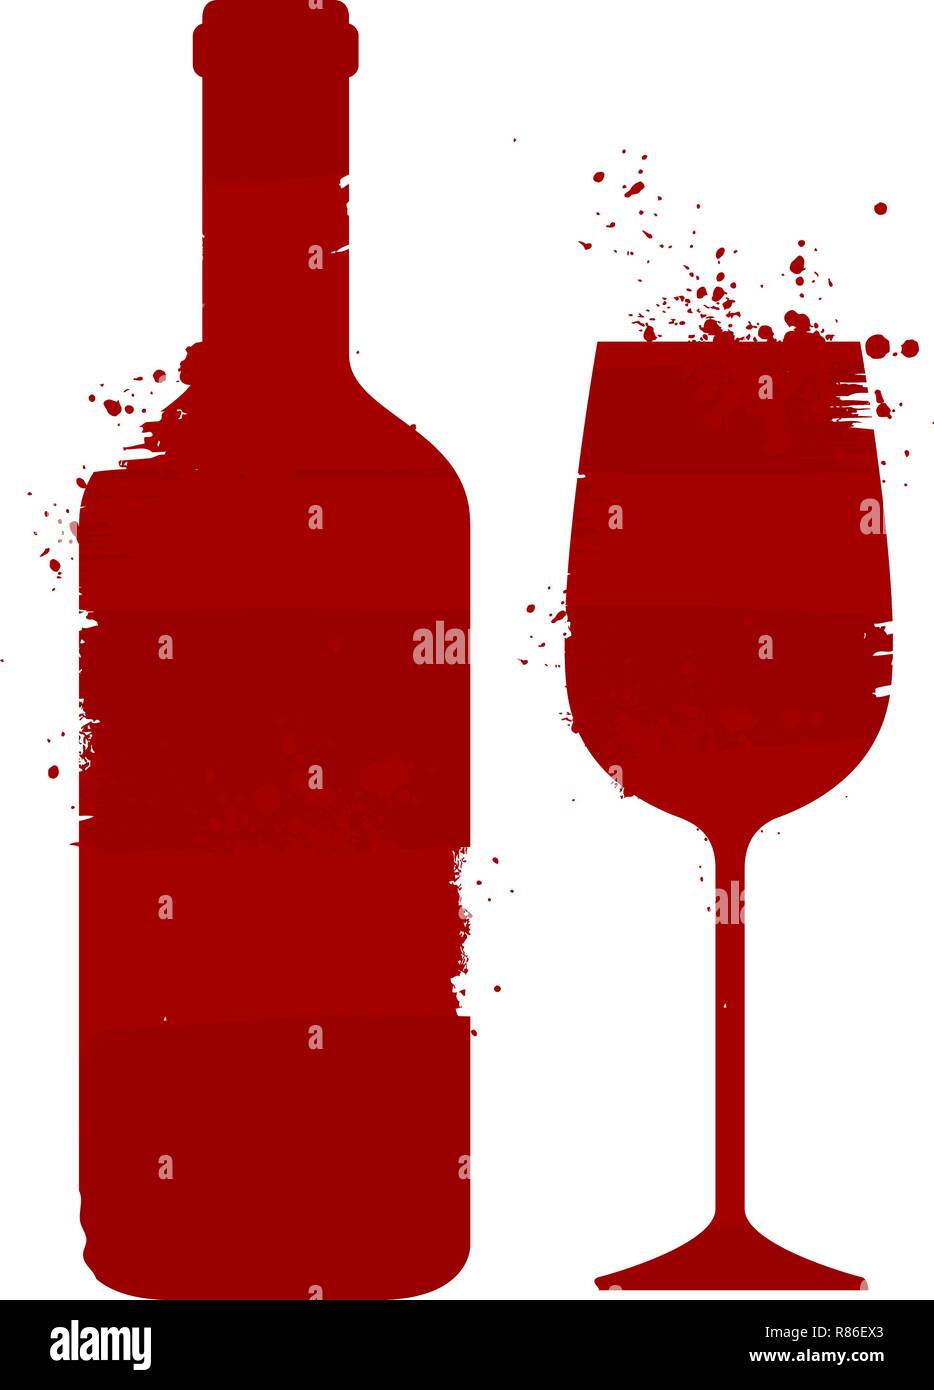 Flasche Wein und Glas. Alkoholisches Getränk. Abstract Vector Illustration Stock Vektor